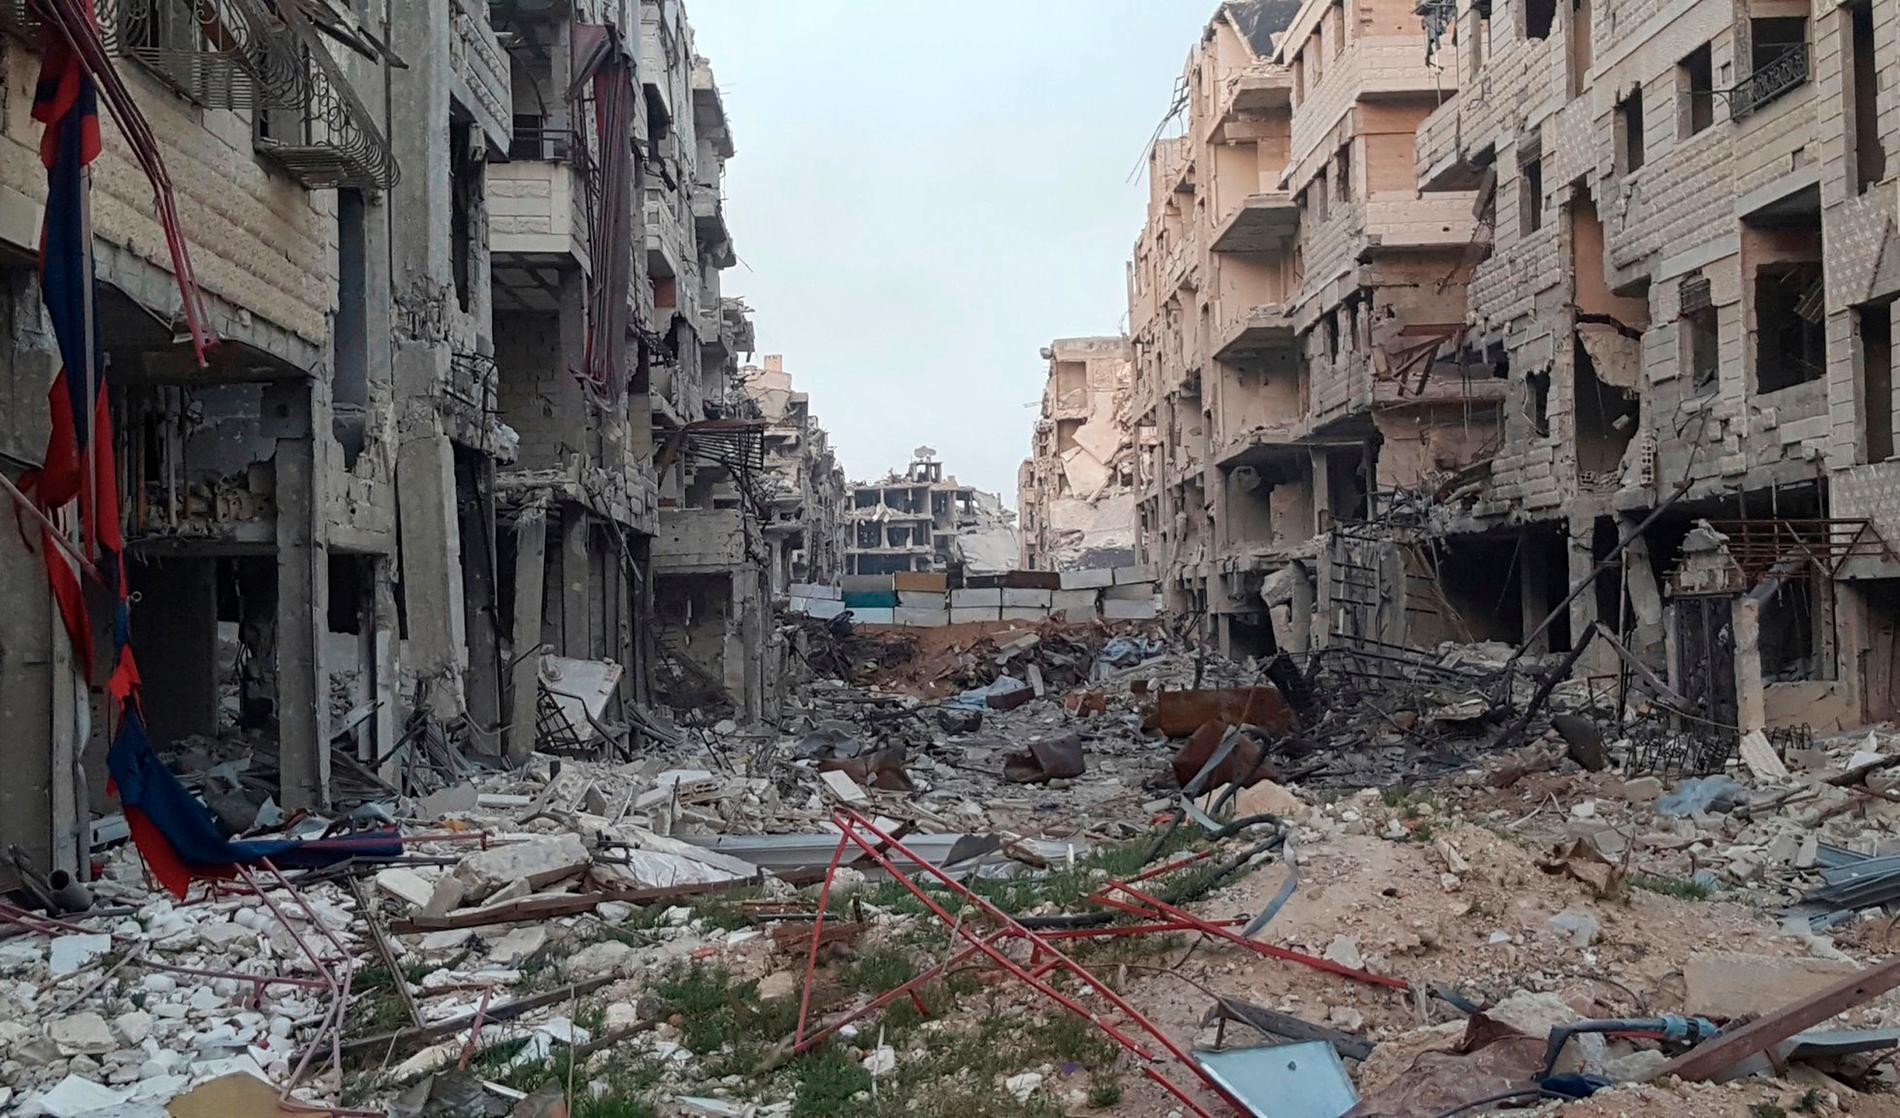 Ett av de nu aktuella stridsområdena öster om Damaskus. Bilden uppges vara tagen för ungefär en vecka sedan.